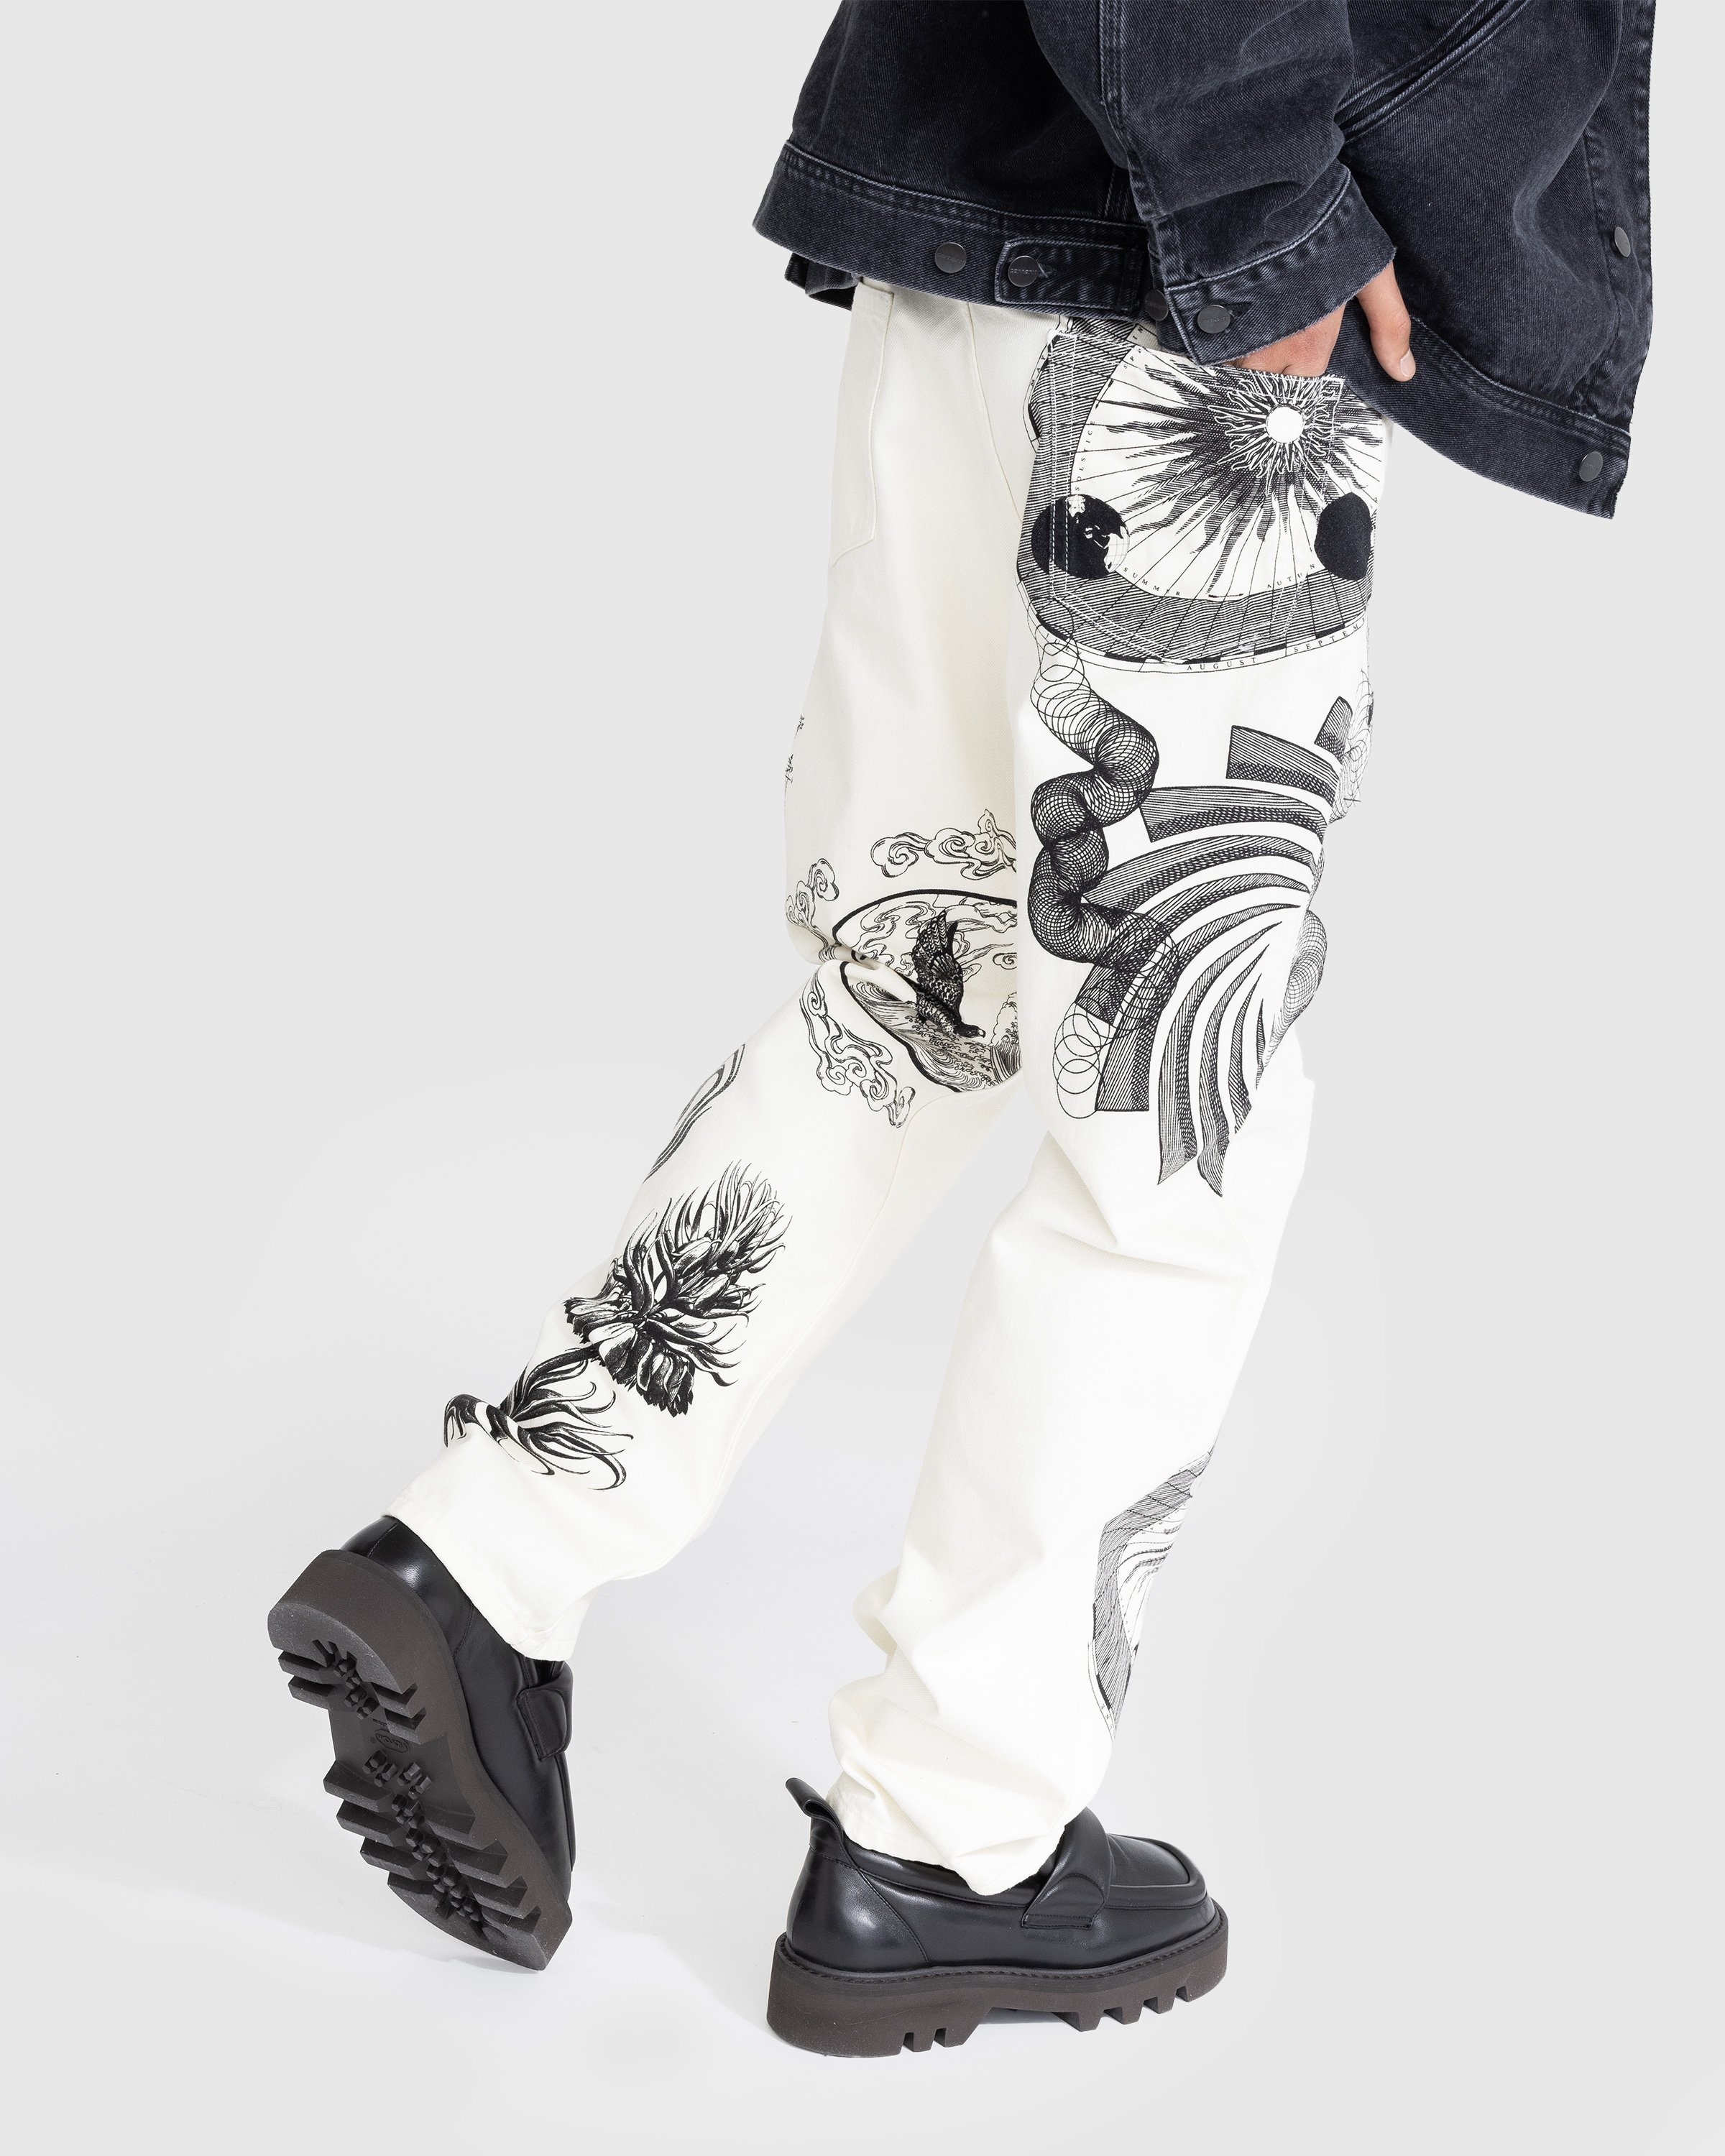 Dries van Noten – Panthero Pants White | Highsnobiety Shop